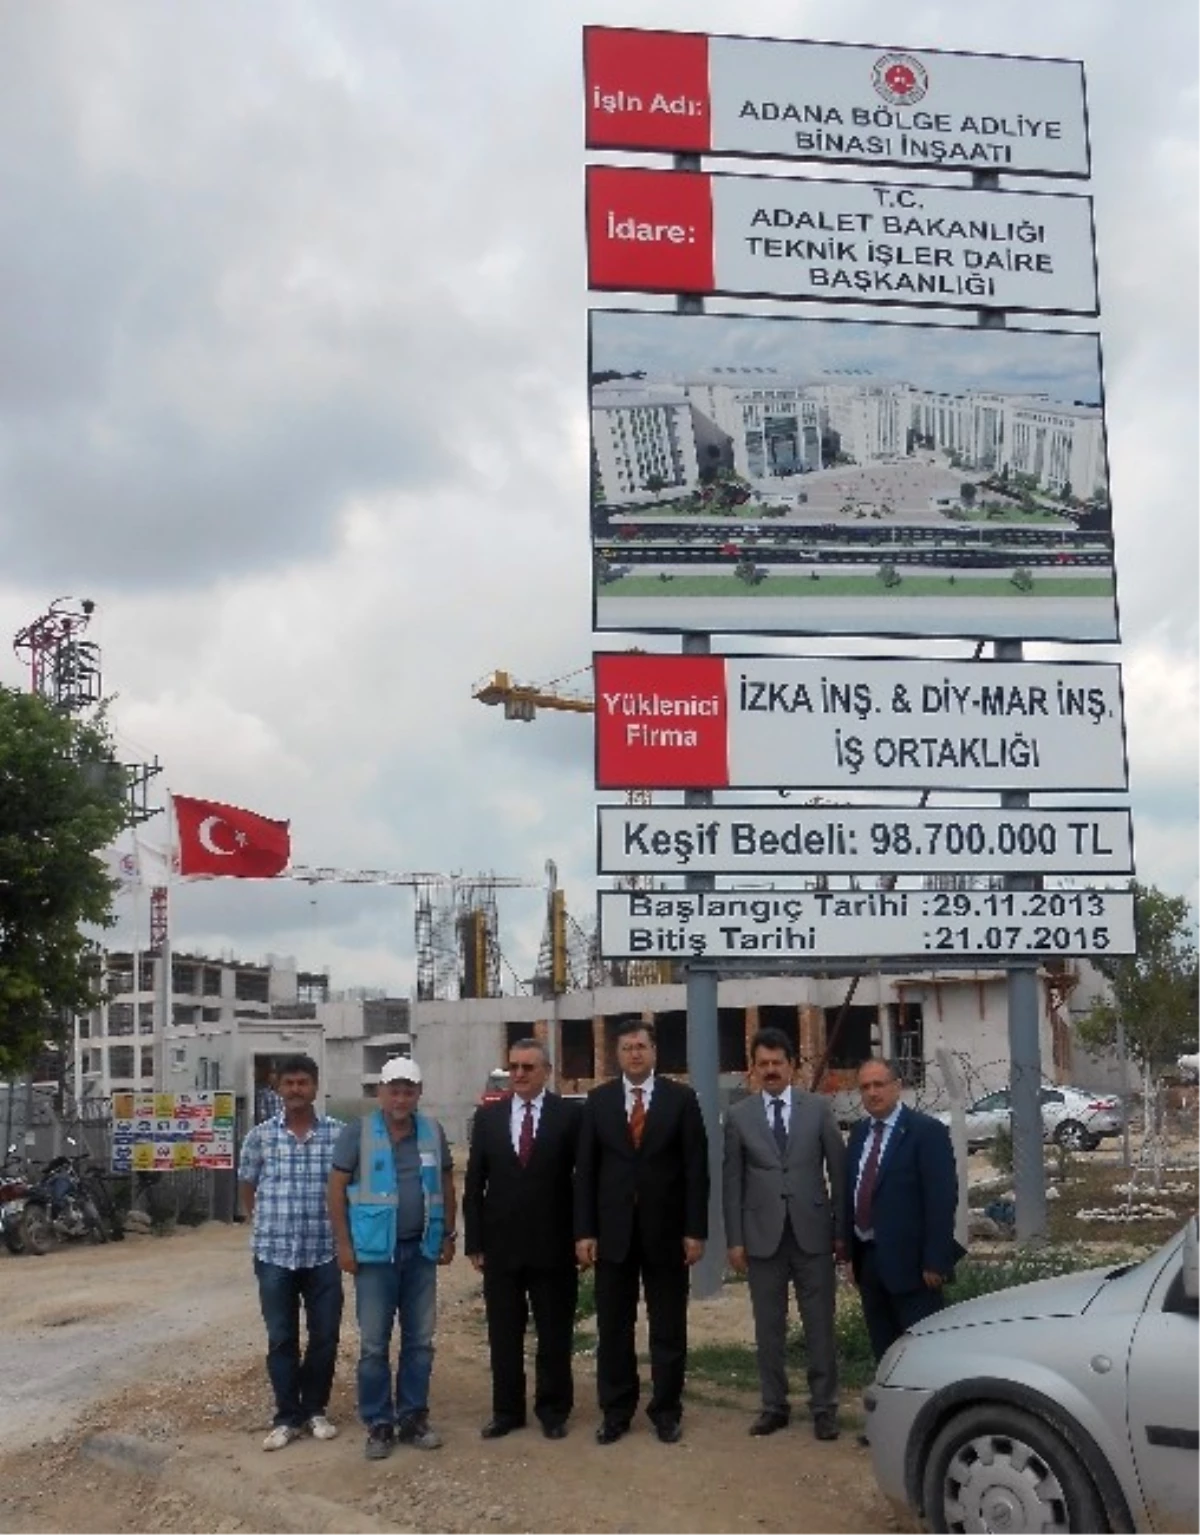 Adana Bölge Adliye Mahkemesi İnşaatı Yükseliyor